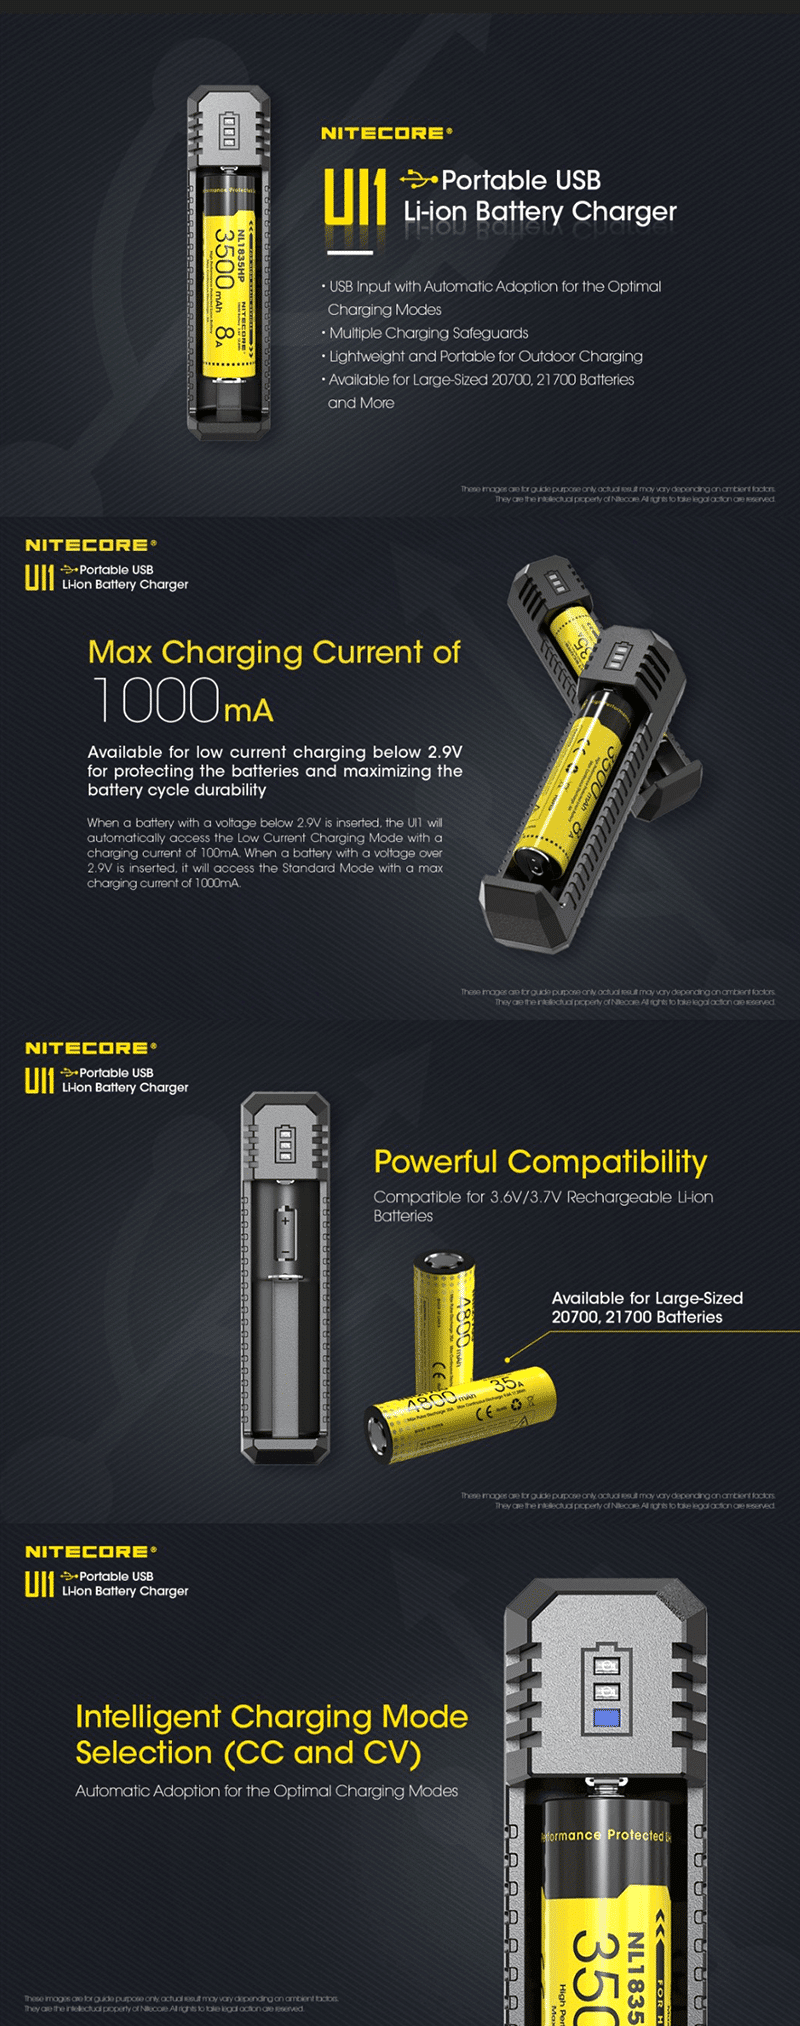 1 Nitecore Ul1 Single Slot Battery Charger 1